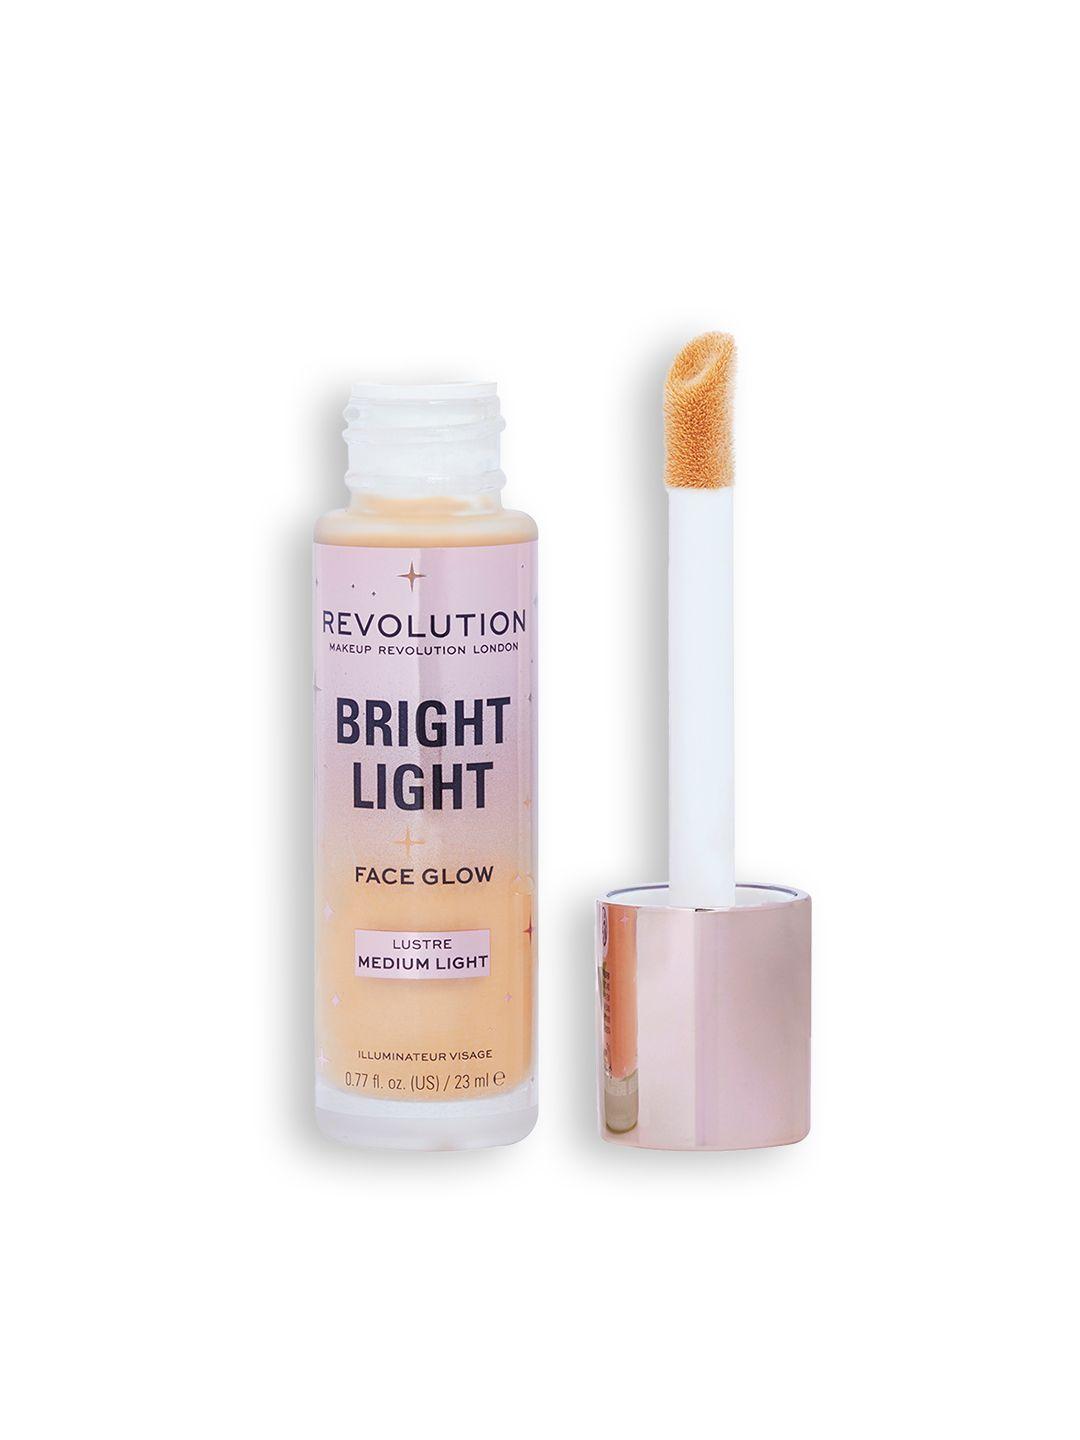 makeup revolution london bright light face glow primer 23ml - lustre medium light